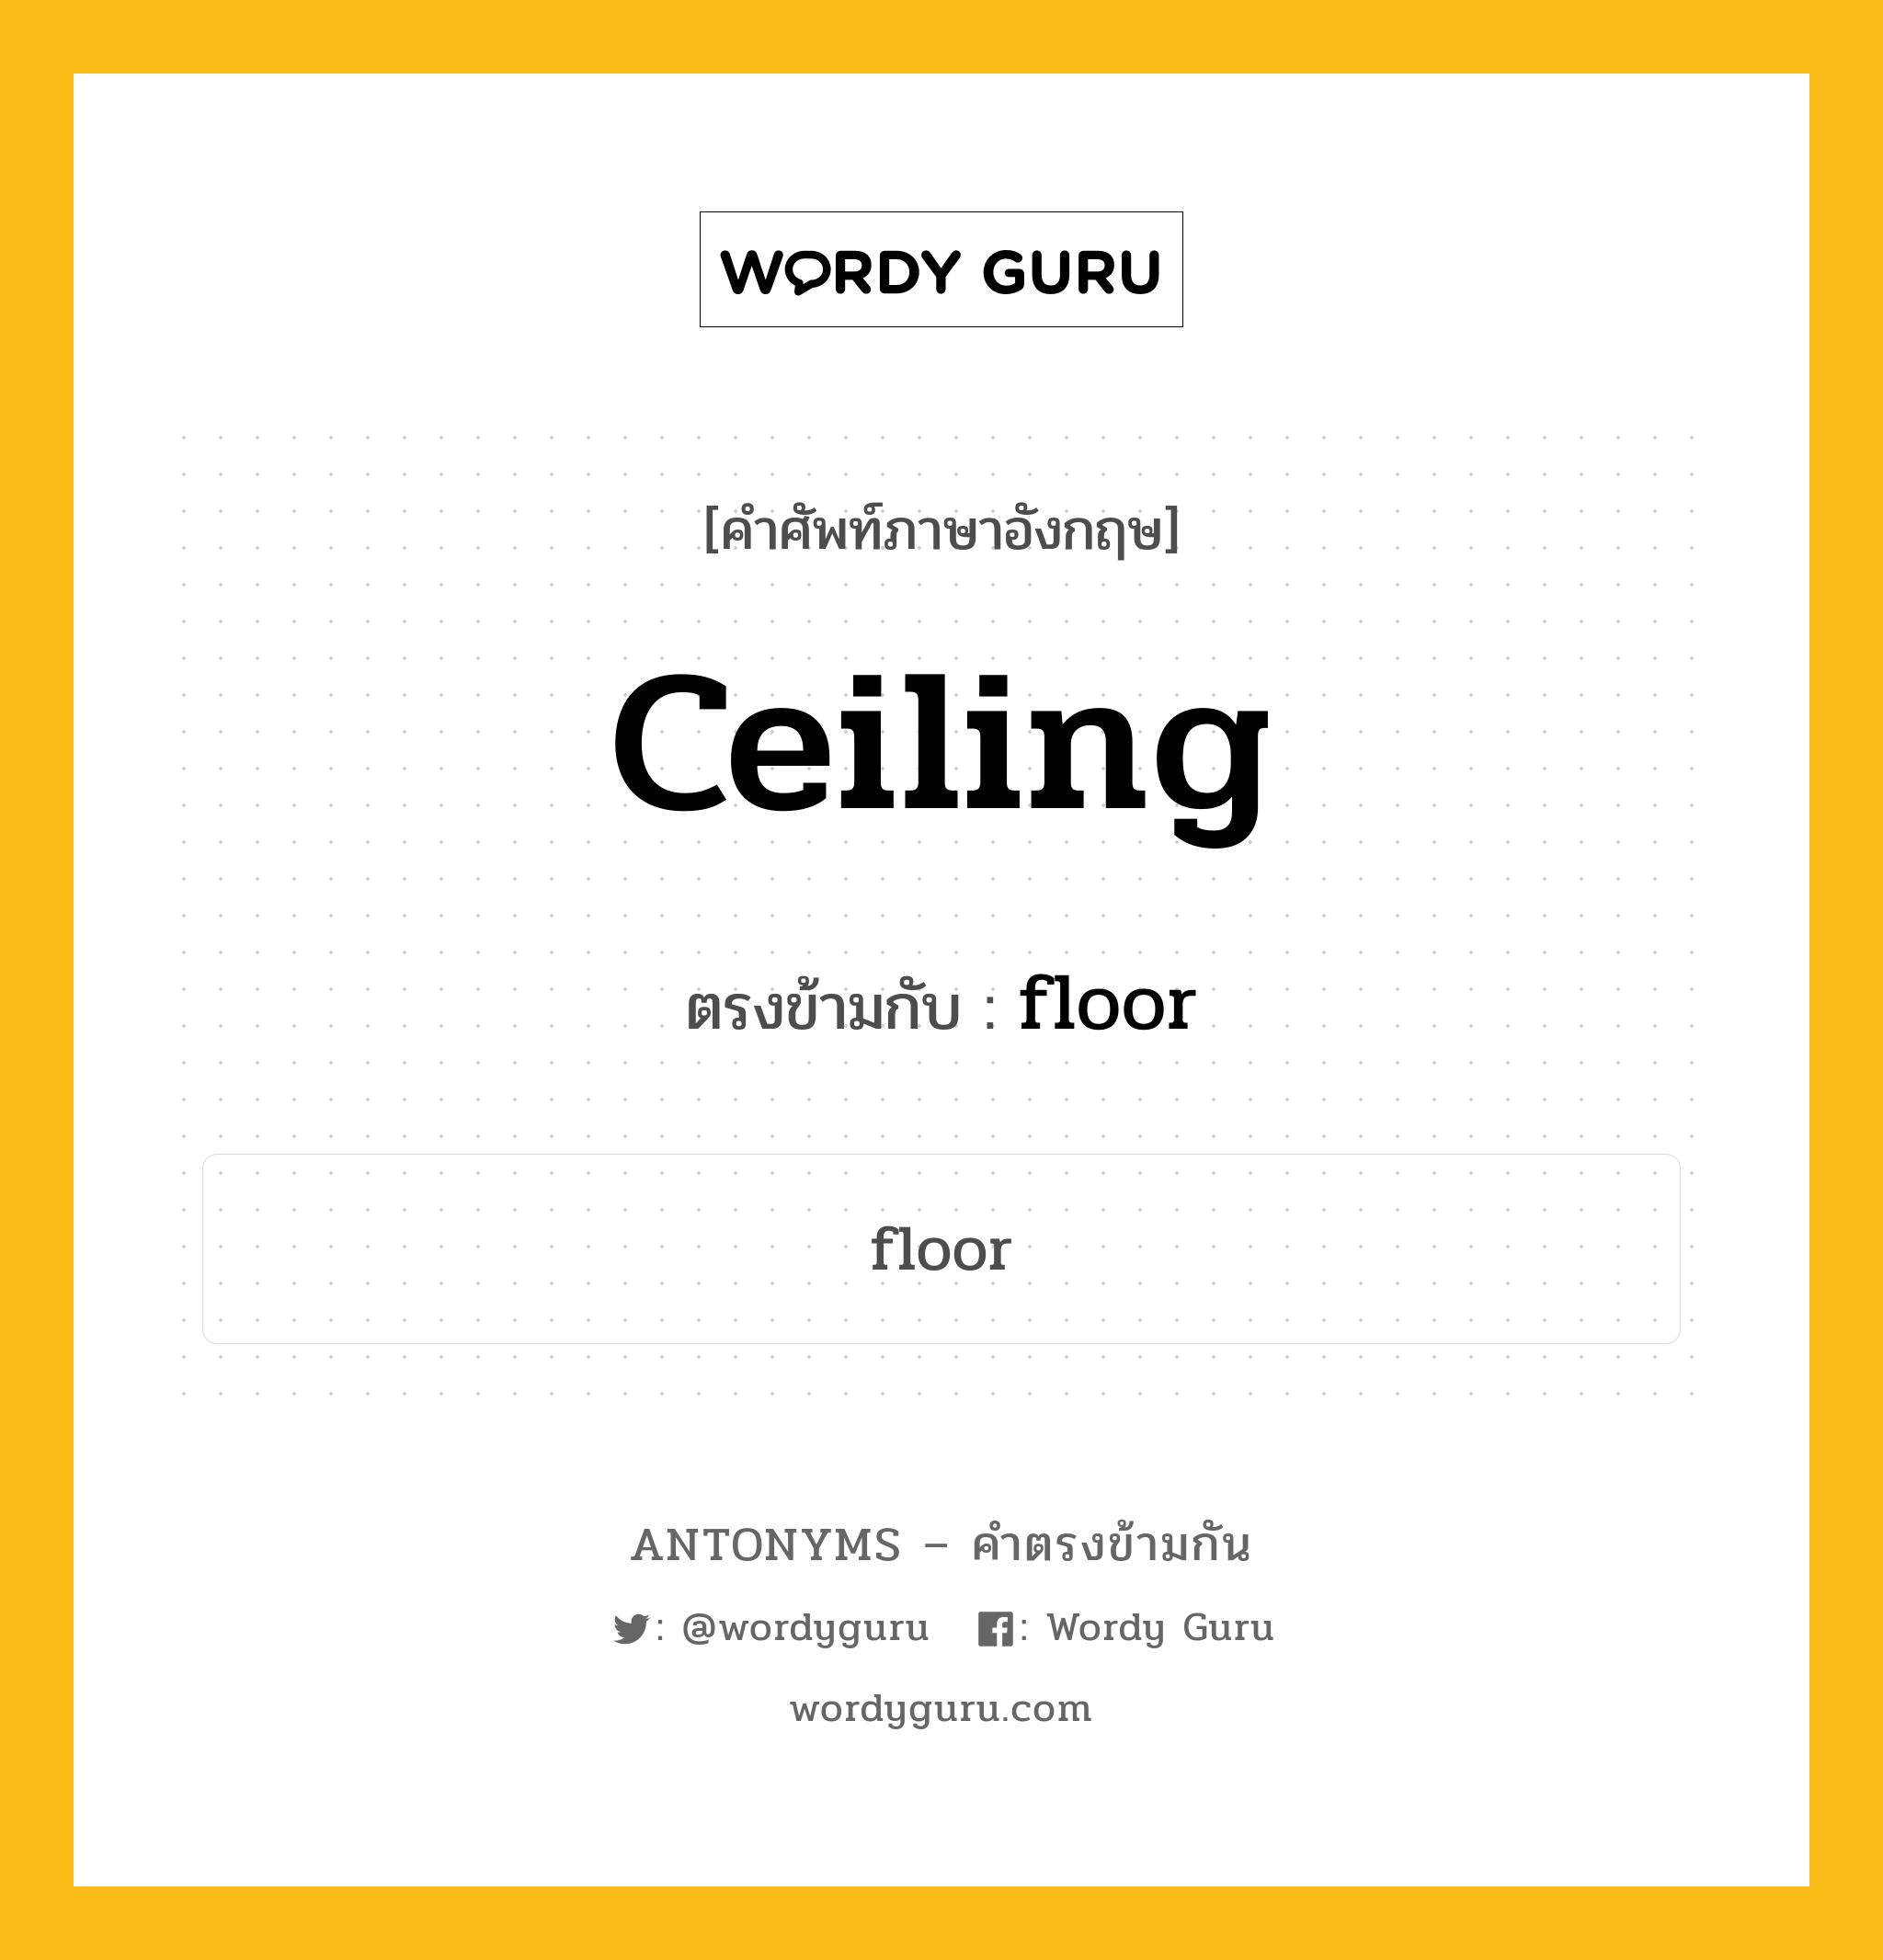 ceiling เป็นคำตรงข้ามกับคำไหนบ้าง?, คำศัพท์ภาษาอังกฤษ ceiling ตรงข้ามกับ floor หมวด floor